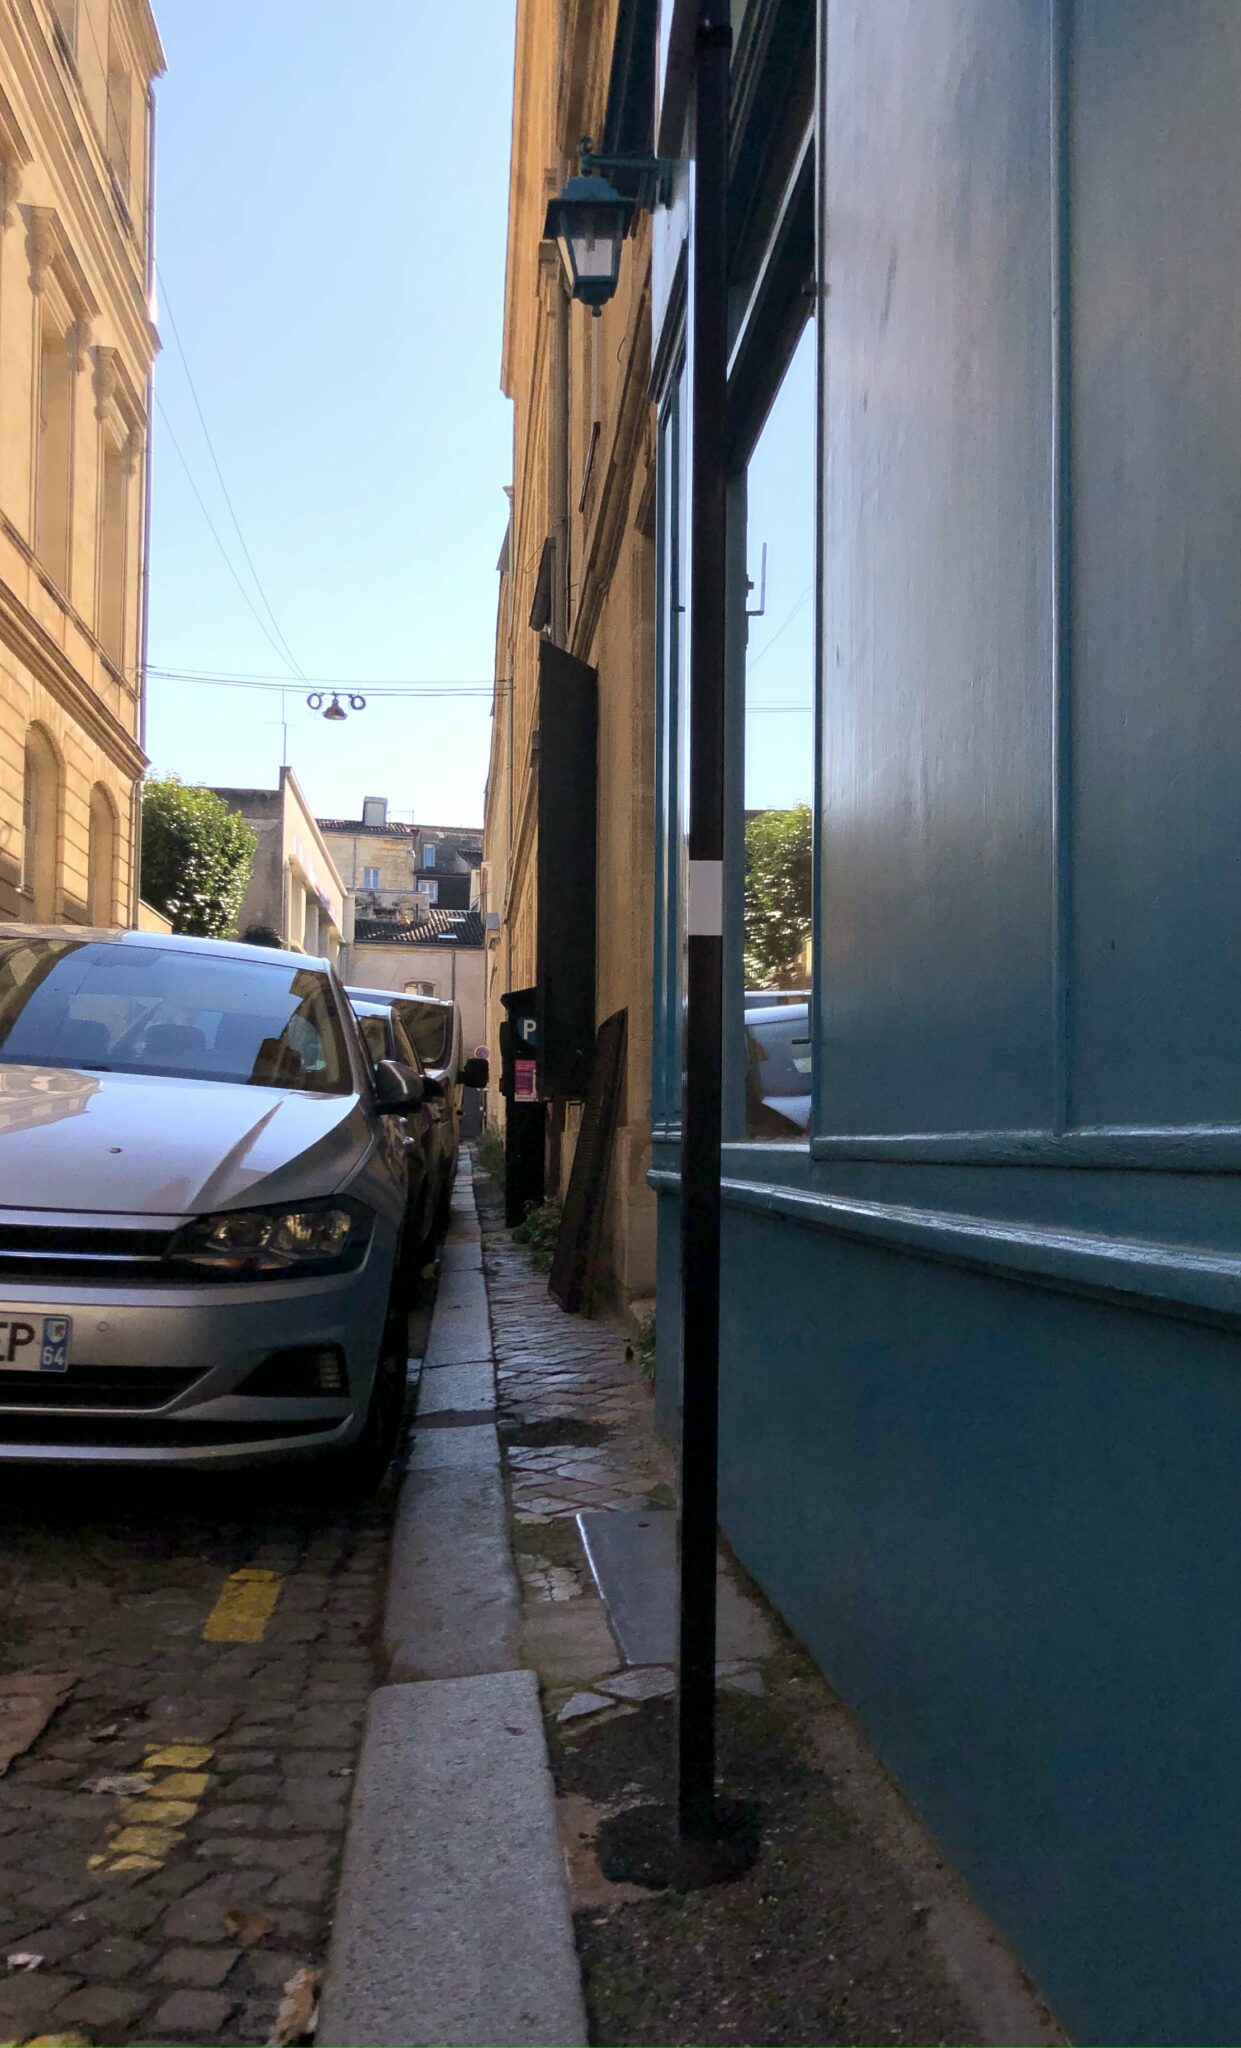 La ville de Bordeaux comporte de nombreux trottoirs étroits et biscornus. Dans un rapport d’étude de juillet 2009, l’agence d’urbanisme Bordeaux métropole aquitaine (A’URBA) rappelle que les trottoirs doivent êtres larges d’au moins 1,40 m, norme essentielle “pour que les personnes en fauteuil roulant ou avec cannes n’aient d’autre choix que de circuler sur la chaussée”, et pour pouvoir installer des rampes.